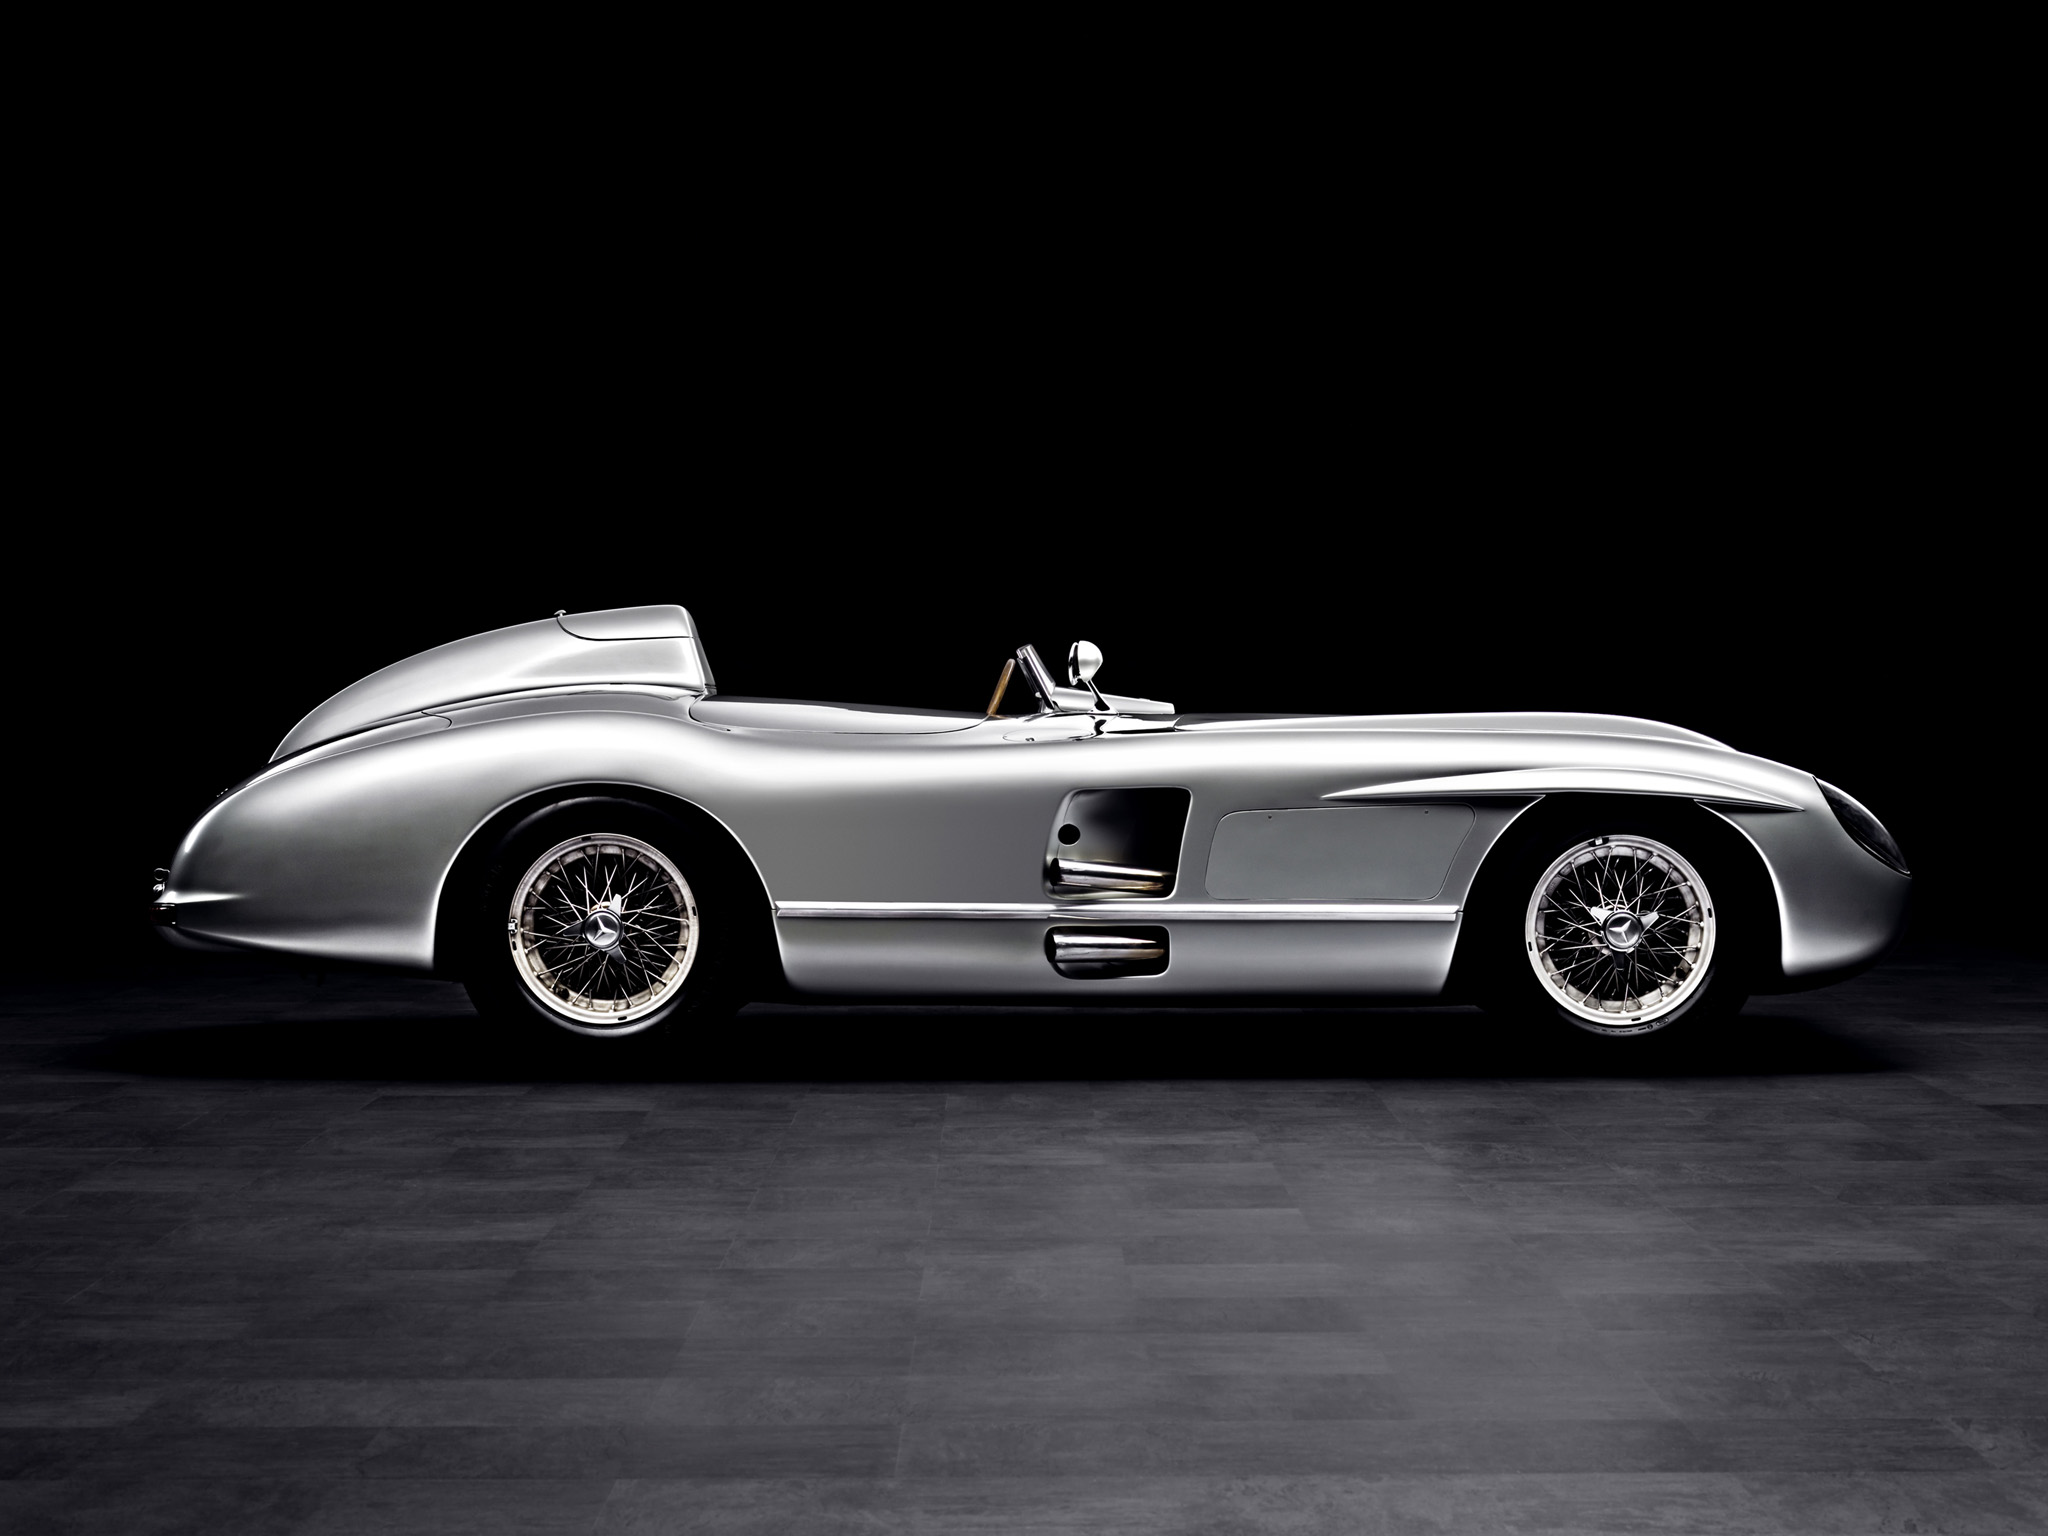 1954, Mercedes, Benz, 300slr, W196s, Supercar, Race, Racing, Retro Wallpaper